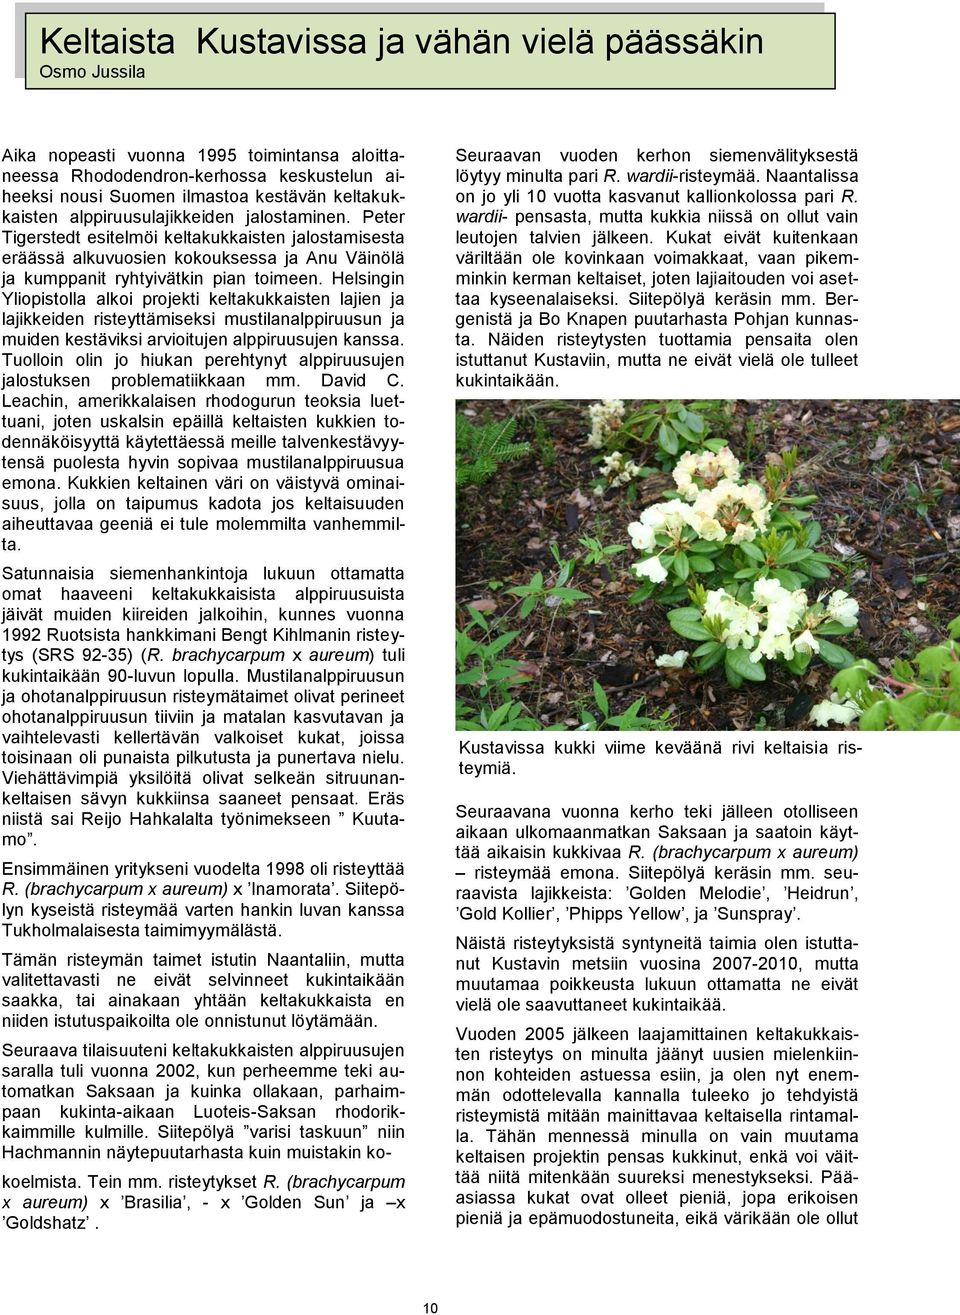 Helsingin Yliopistolla alkoi projekti keltakukkaisten lajien ja lajikkeiden risteyttämiseksi mustilanalppiruusun ja muiden kestäviksi arvioitujen alppiruusujen kanssa.